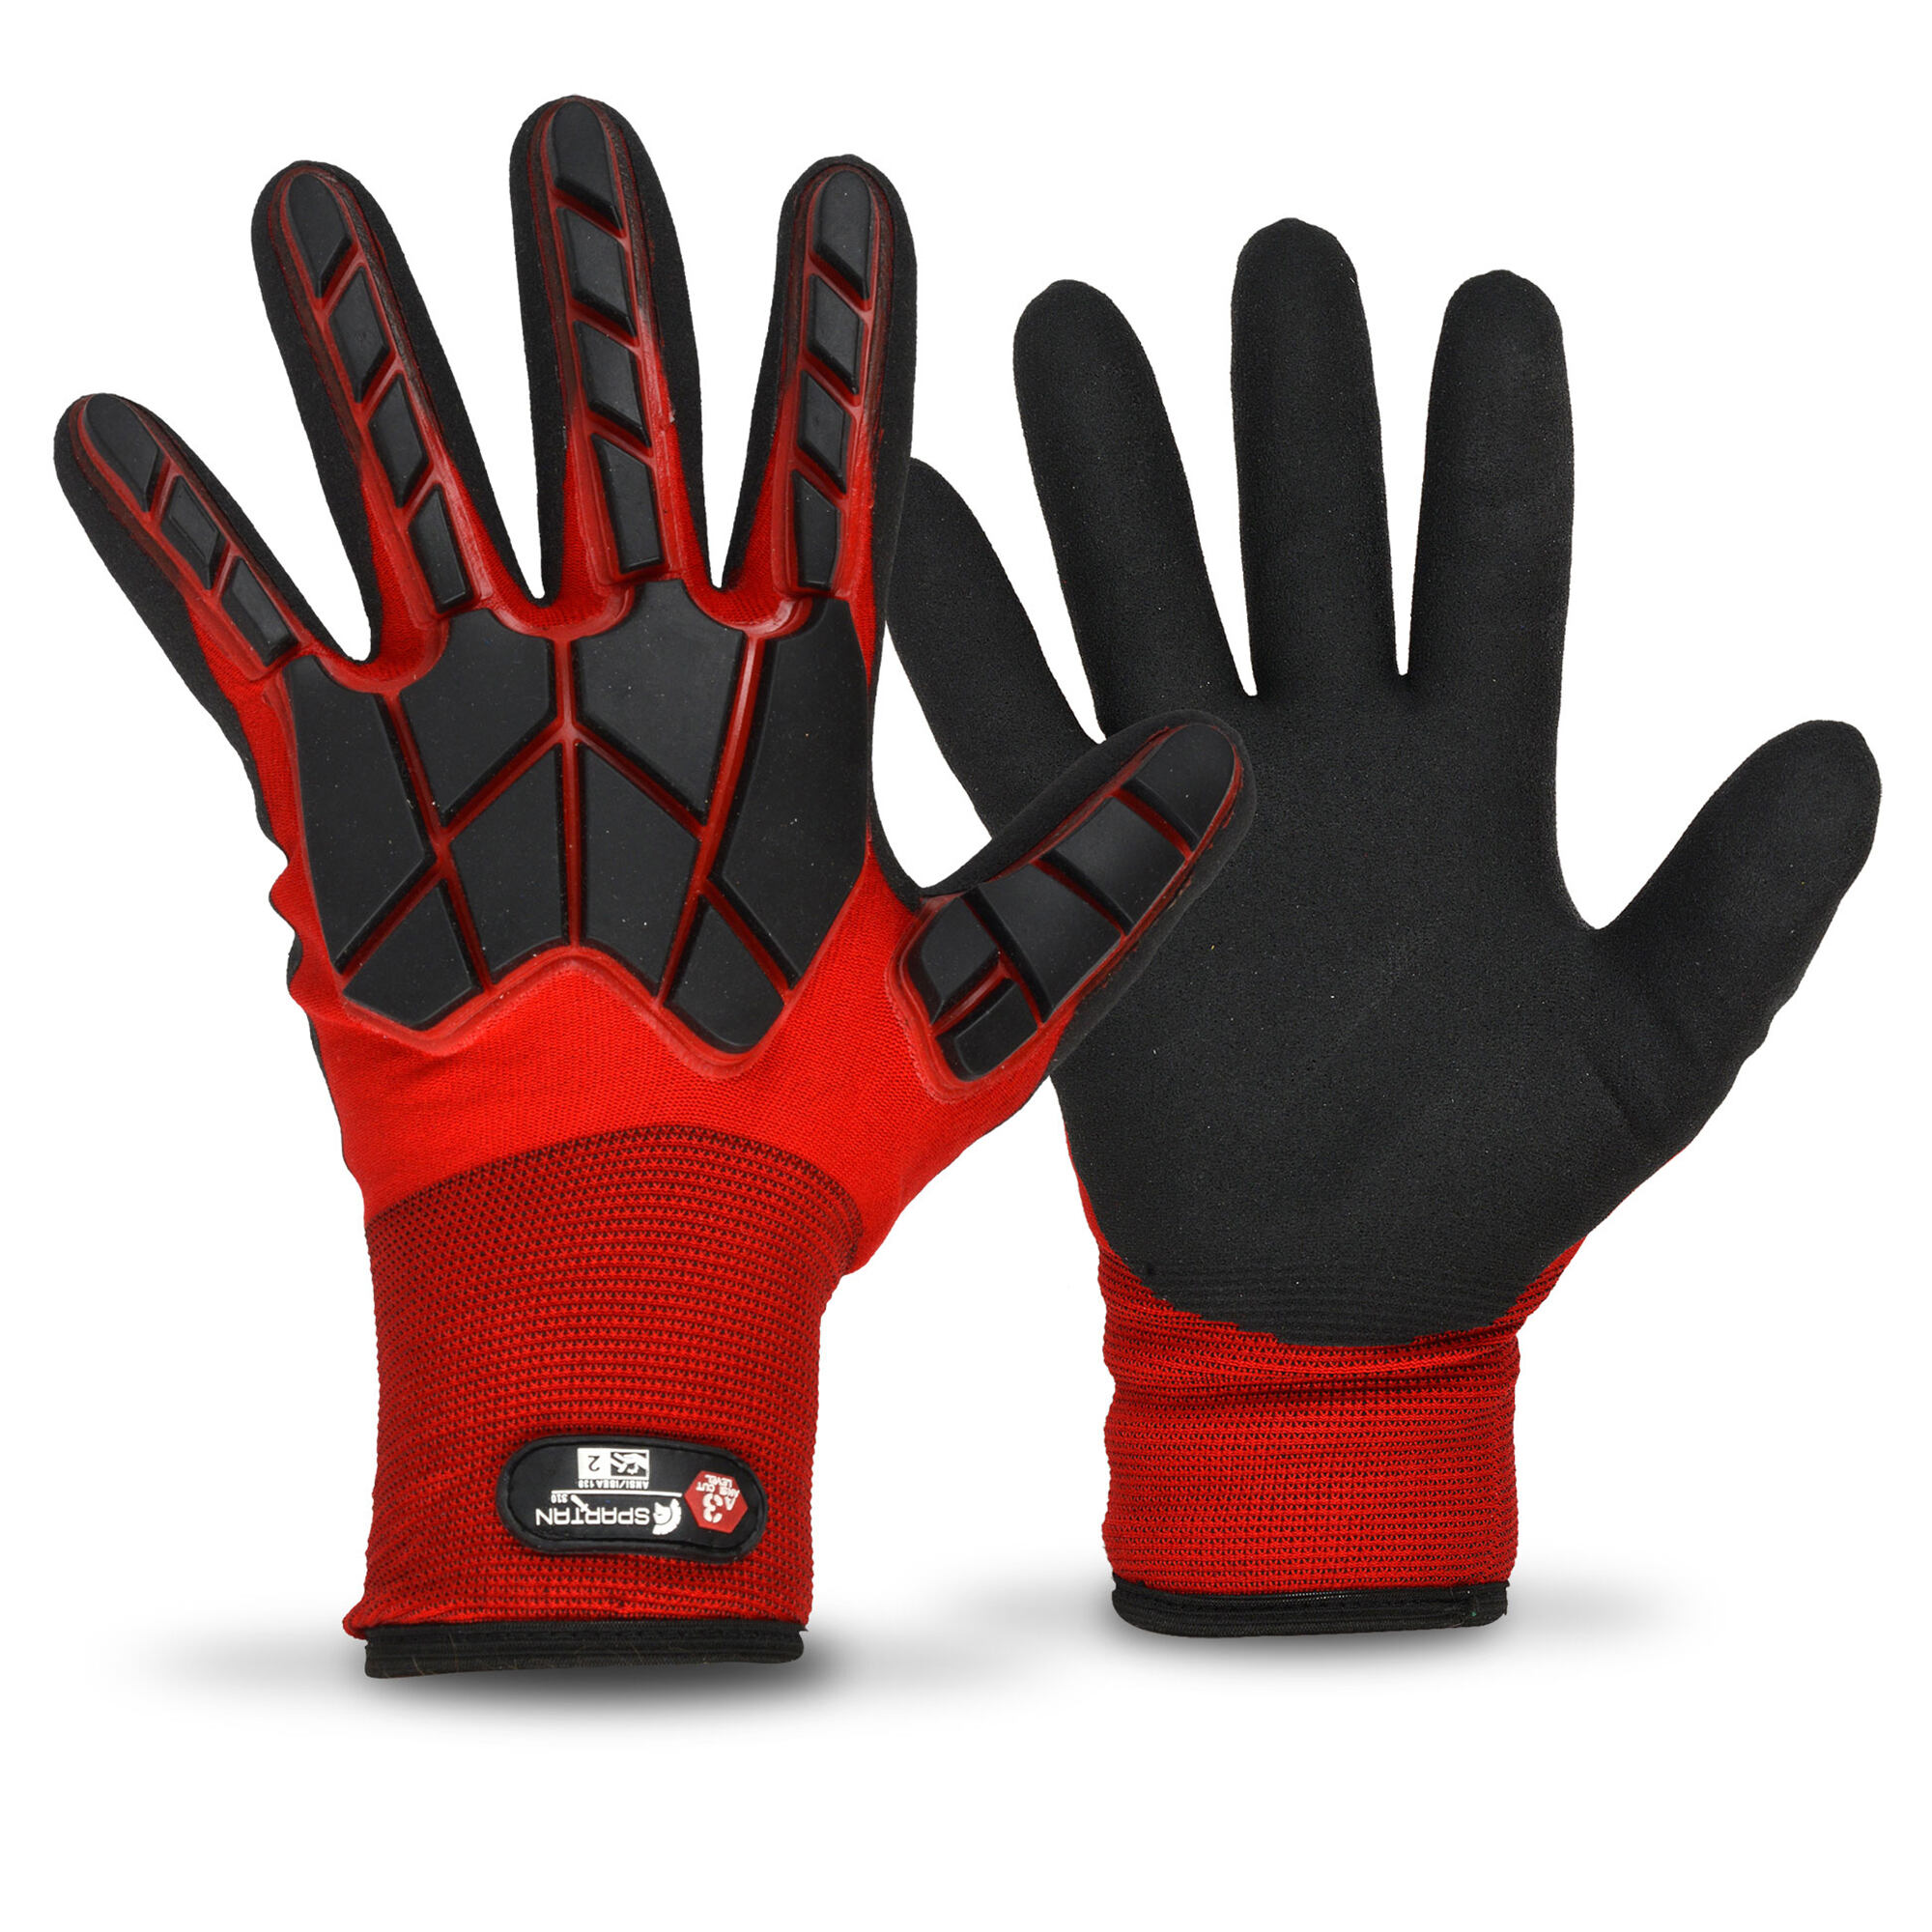 Spartan 310 glove, Truline, Cold Weather Glove